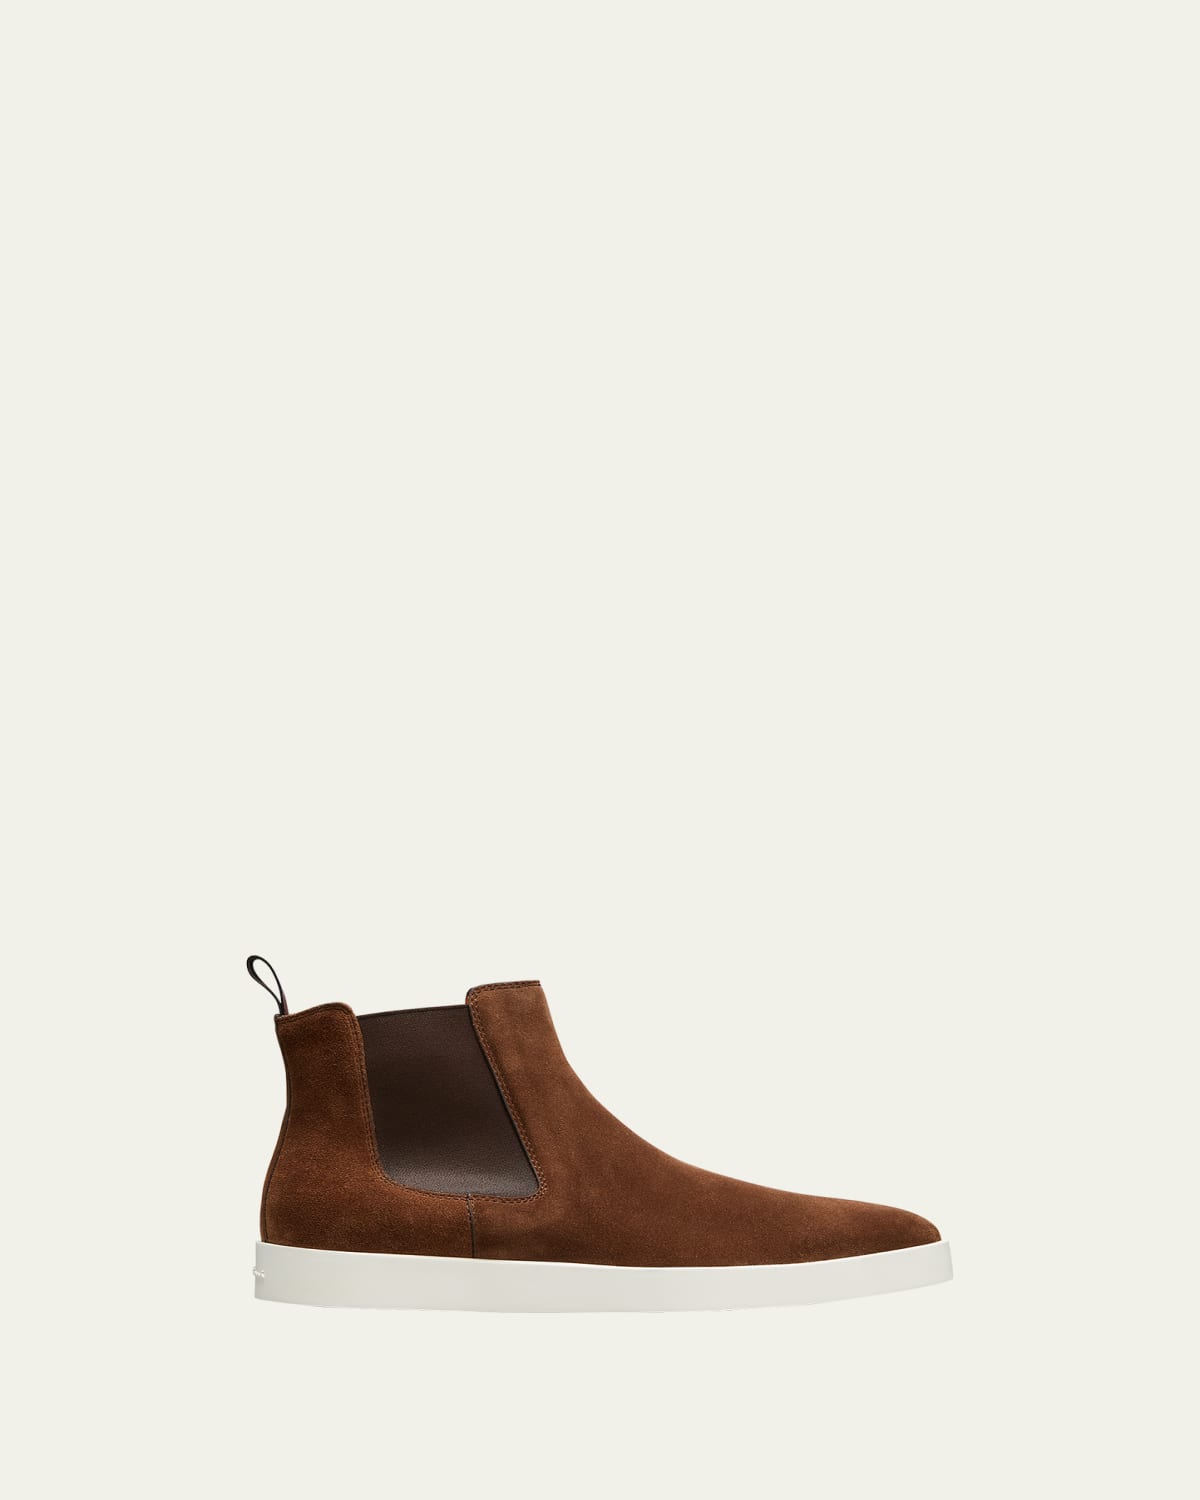 SANTONI Boots for Men | ModeSens